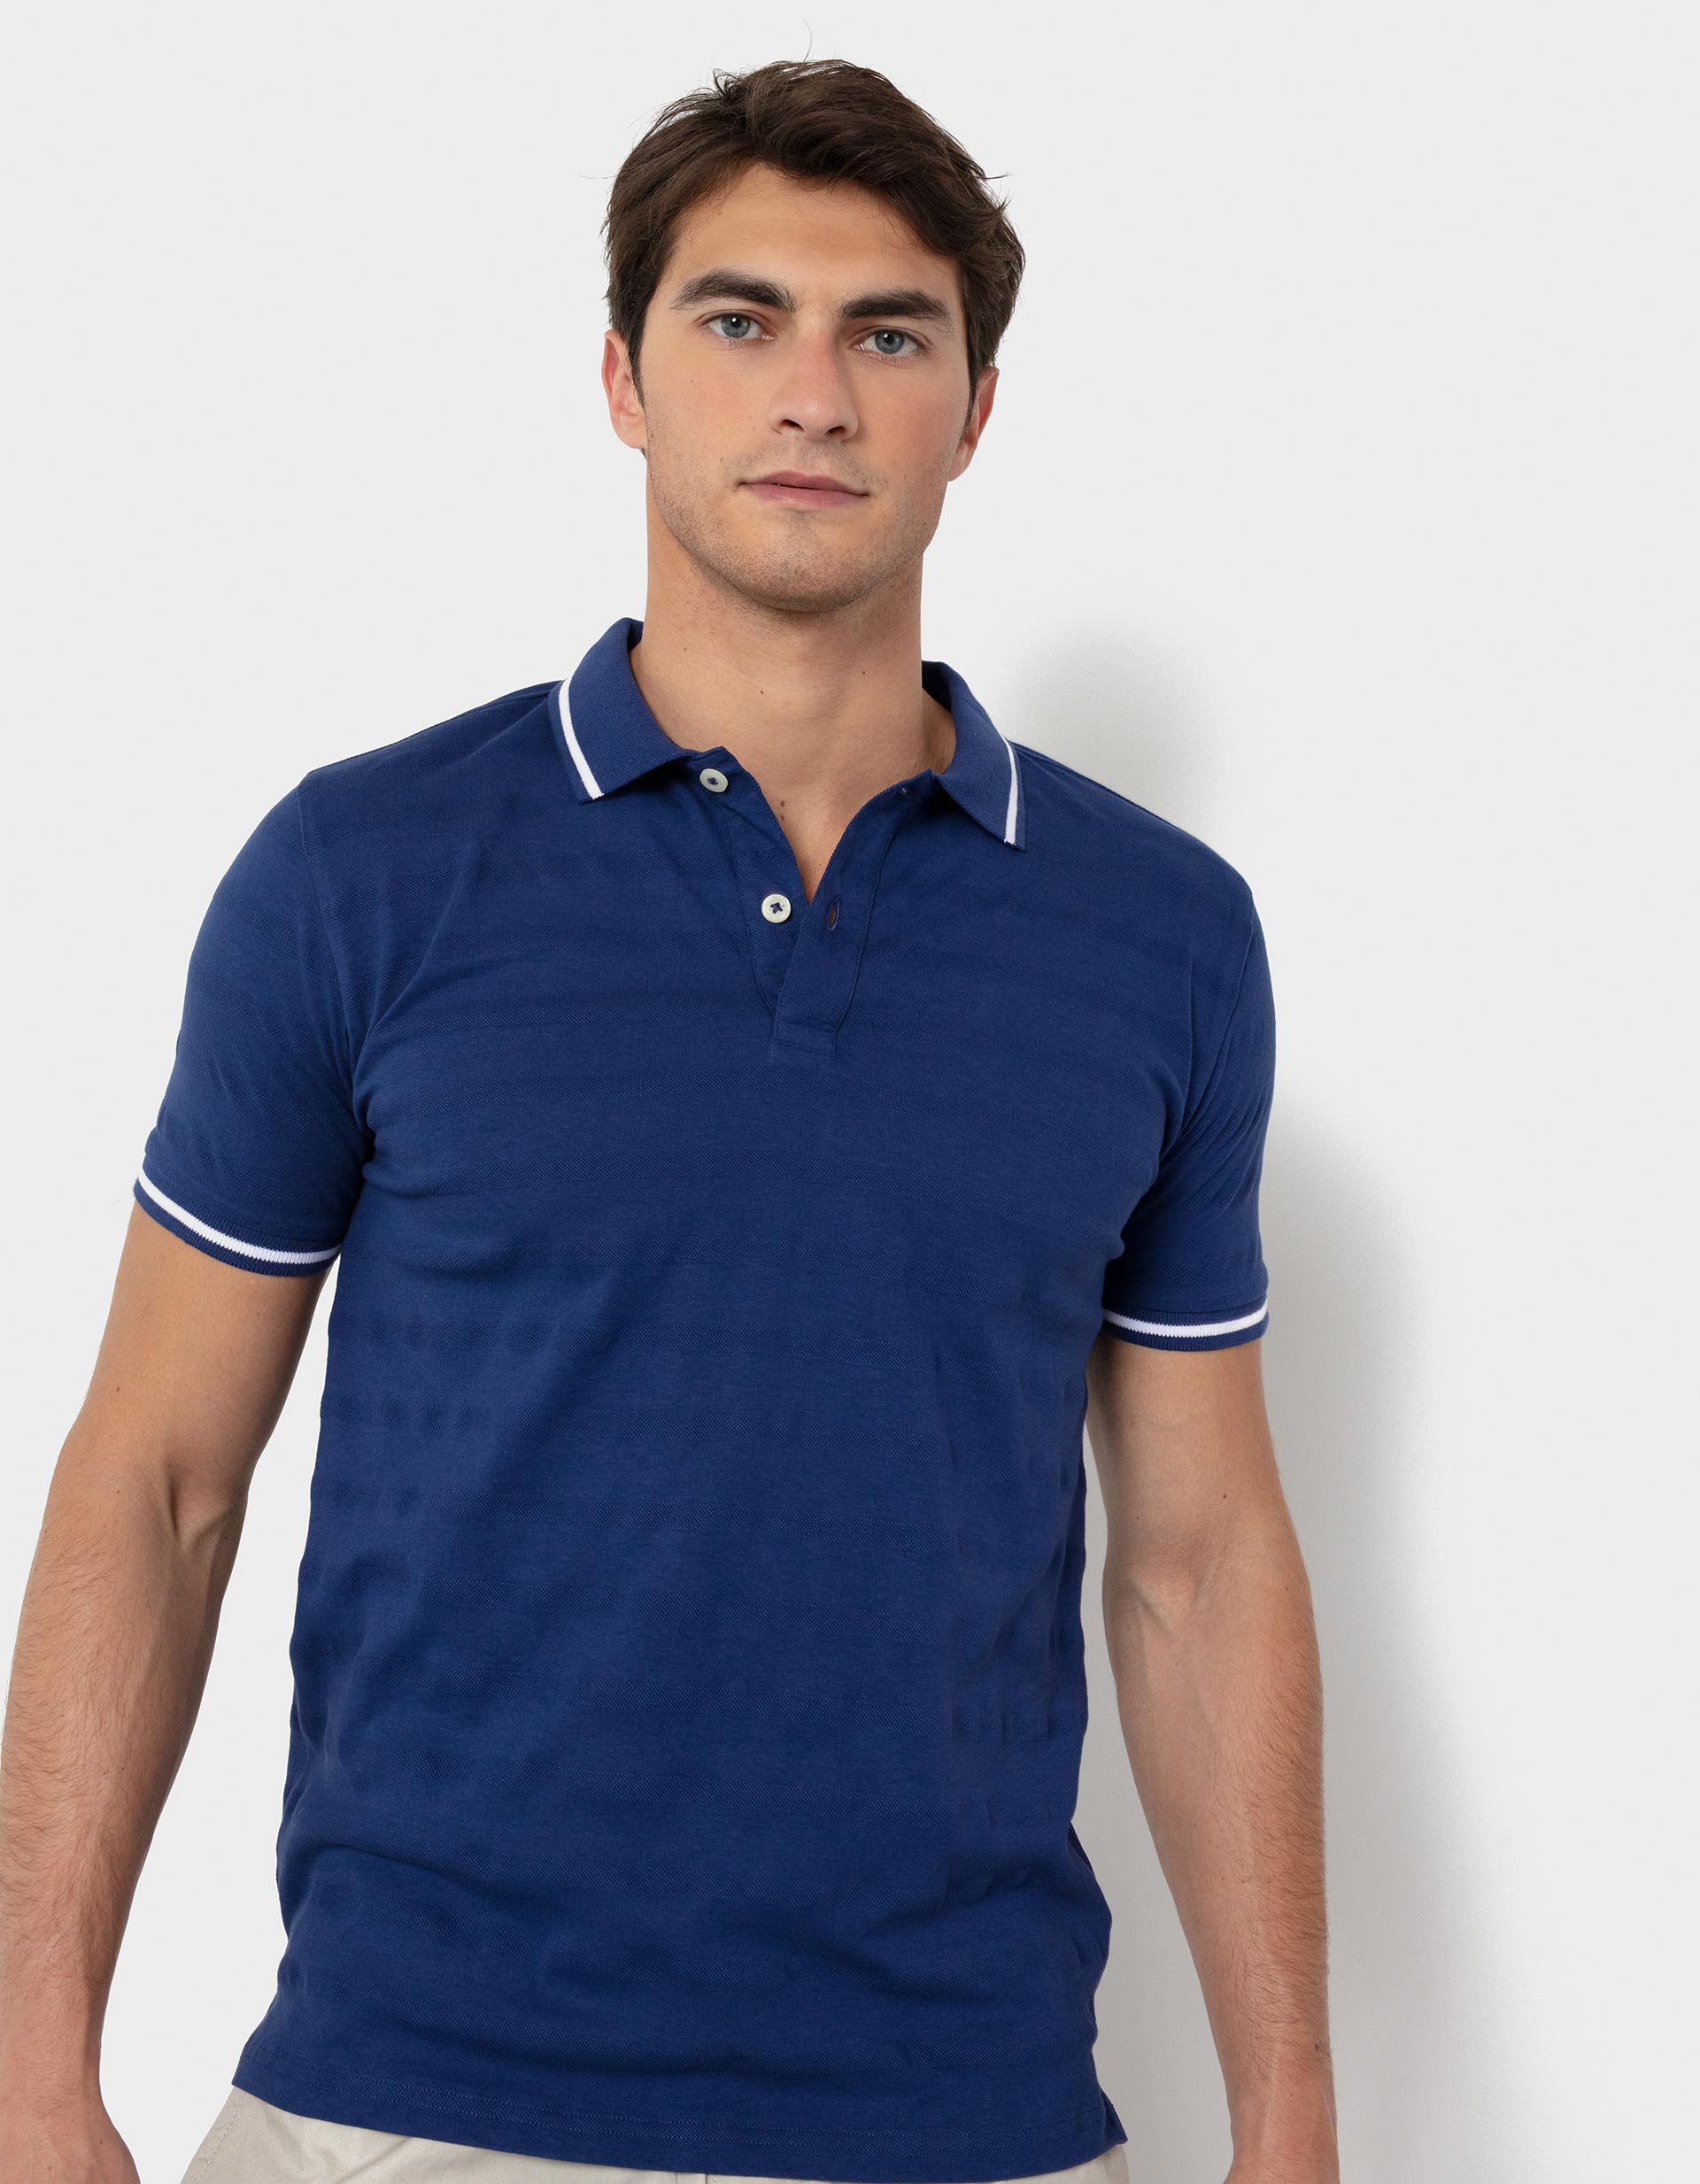 Piqué Knit Polo Shirt, for Men | MO Online